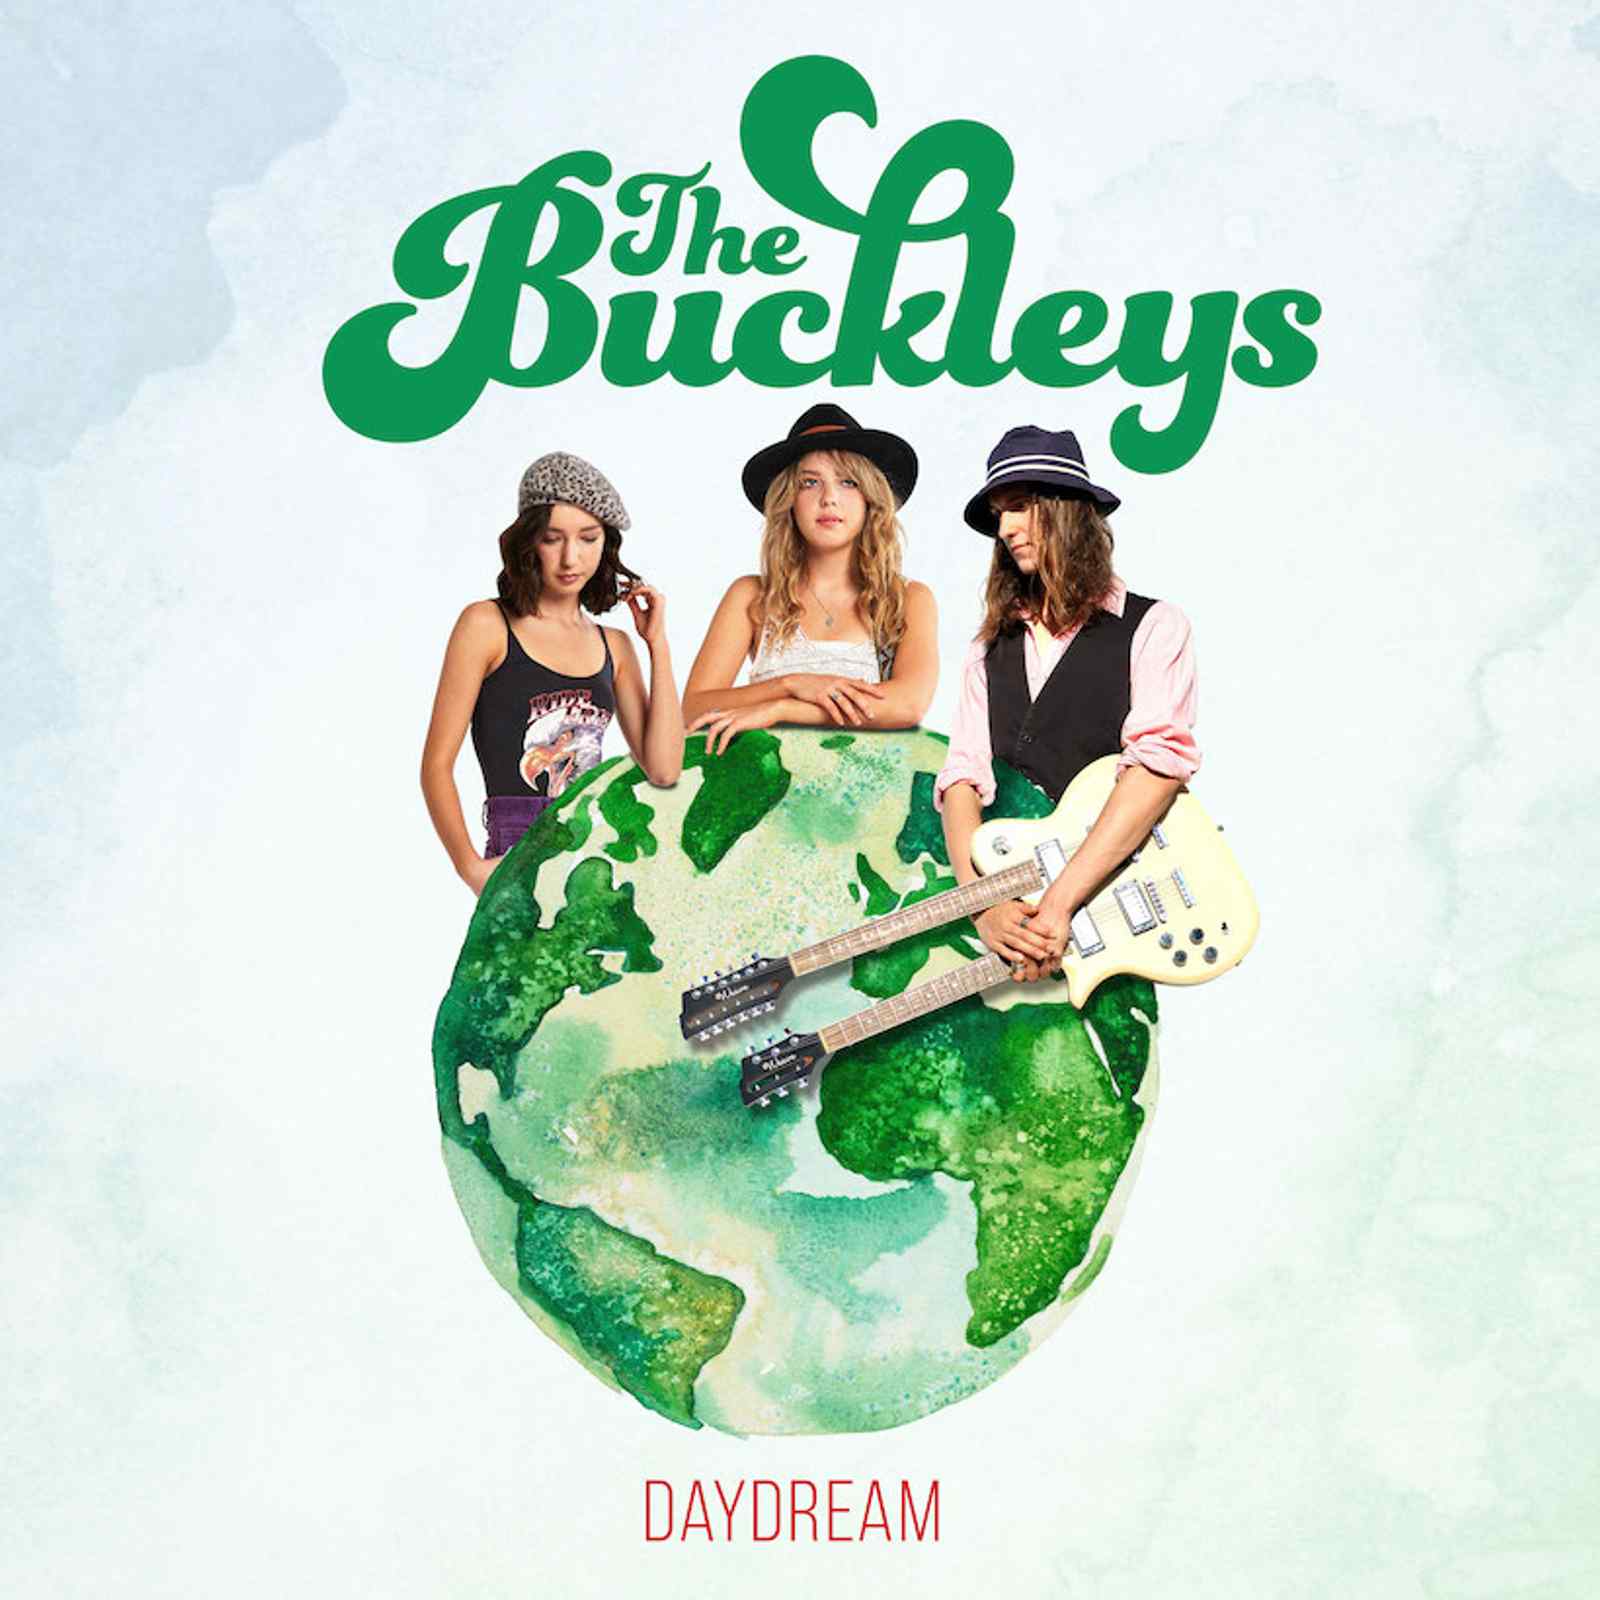 Daydream by The Buckleys